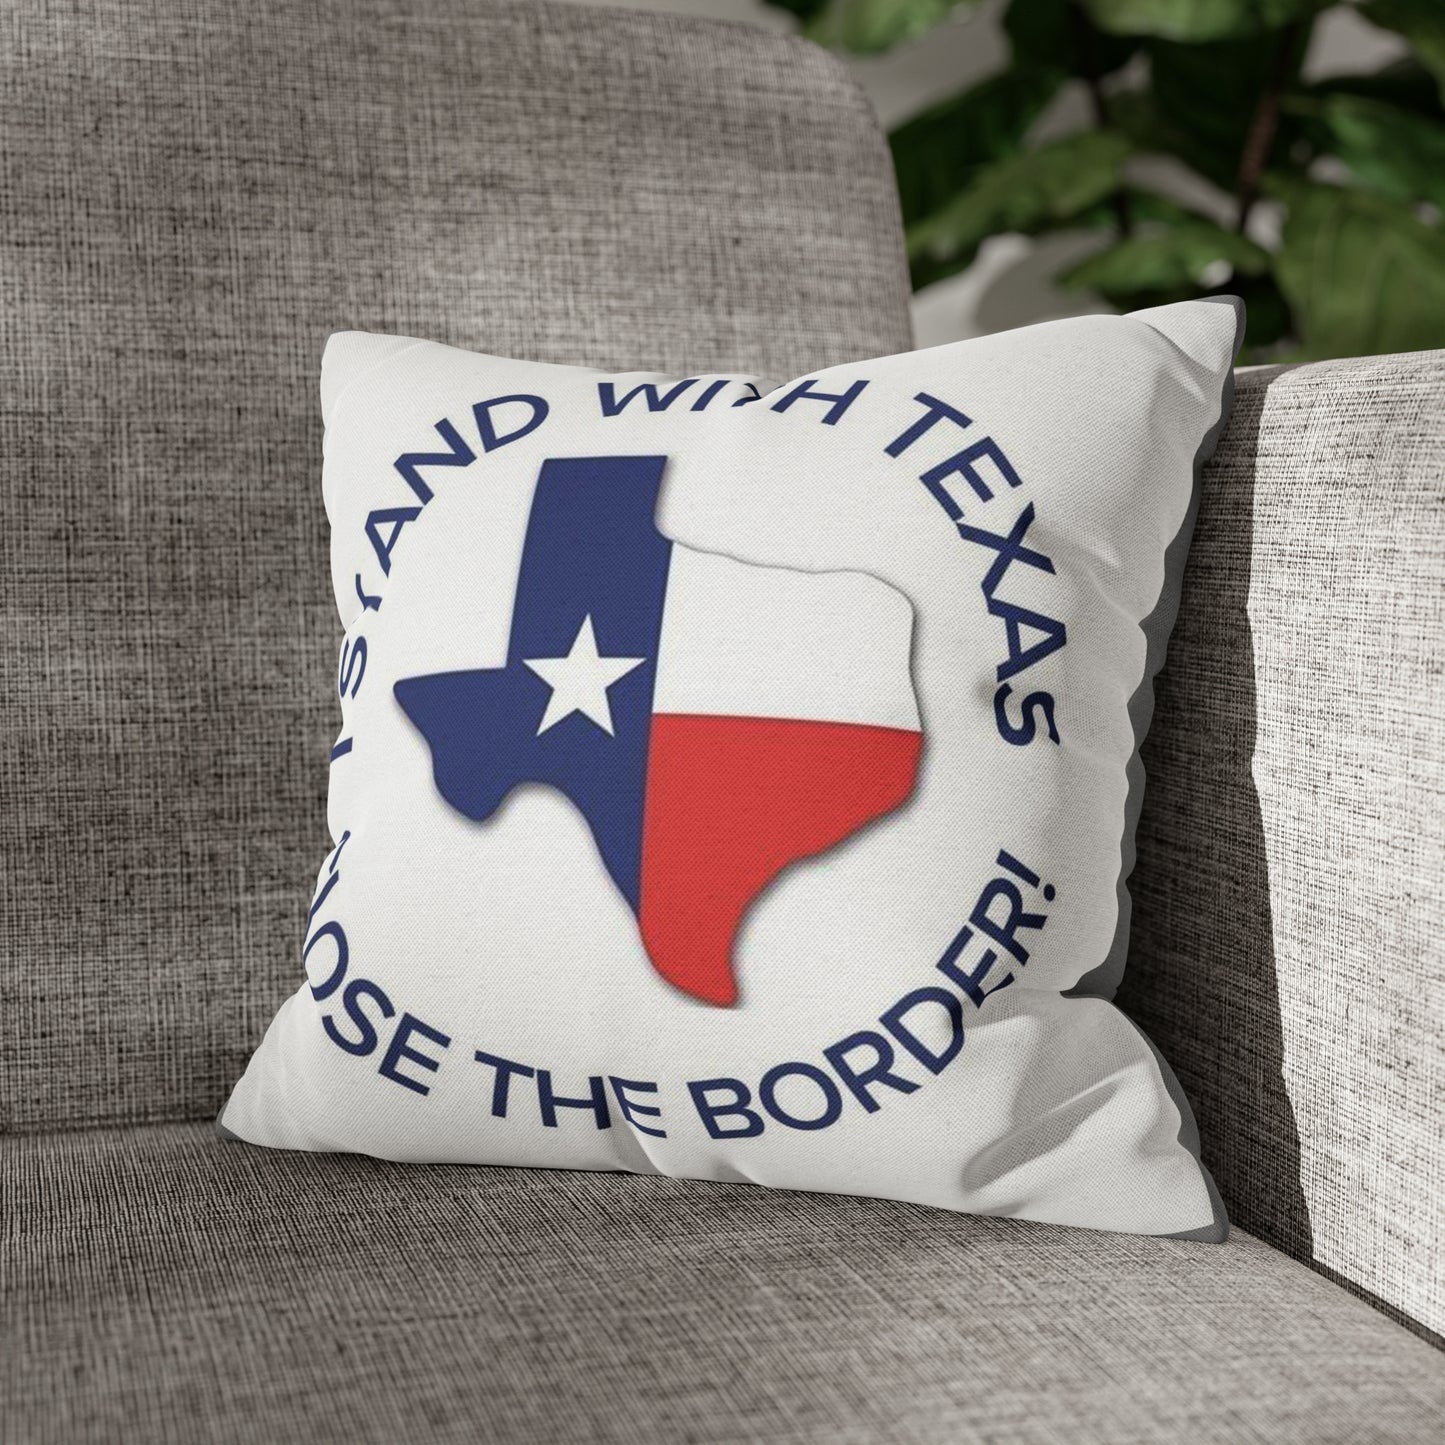 Ich stehe mit dem zweiseitigen Kissenbezug „Texas Close the Border“ zur Seite